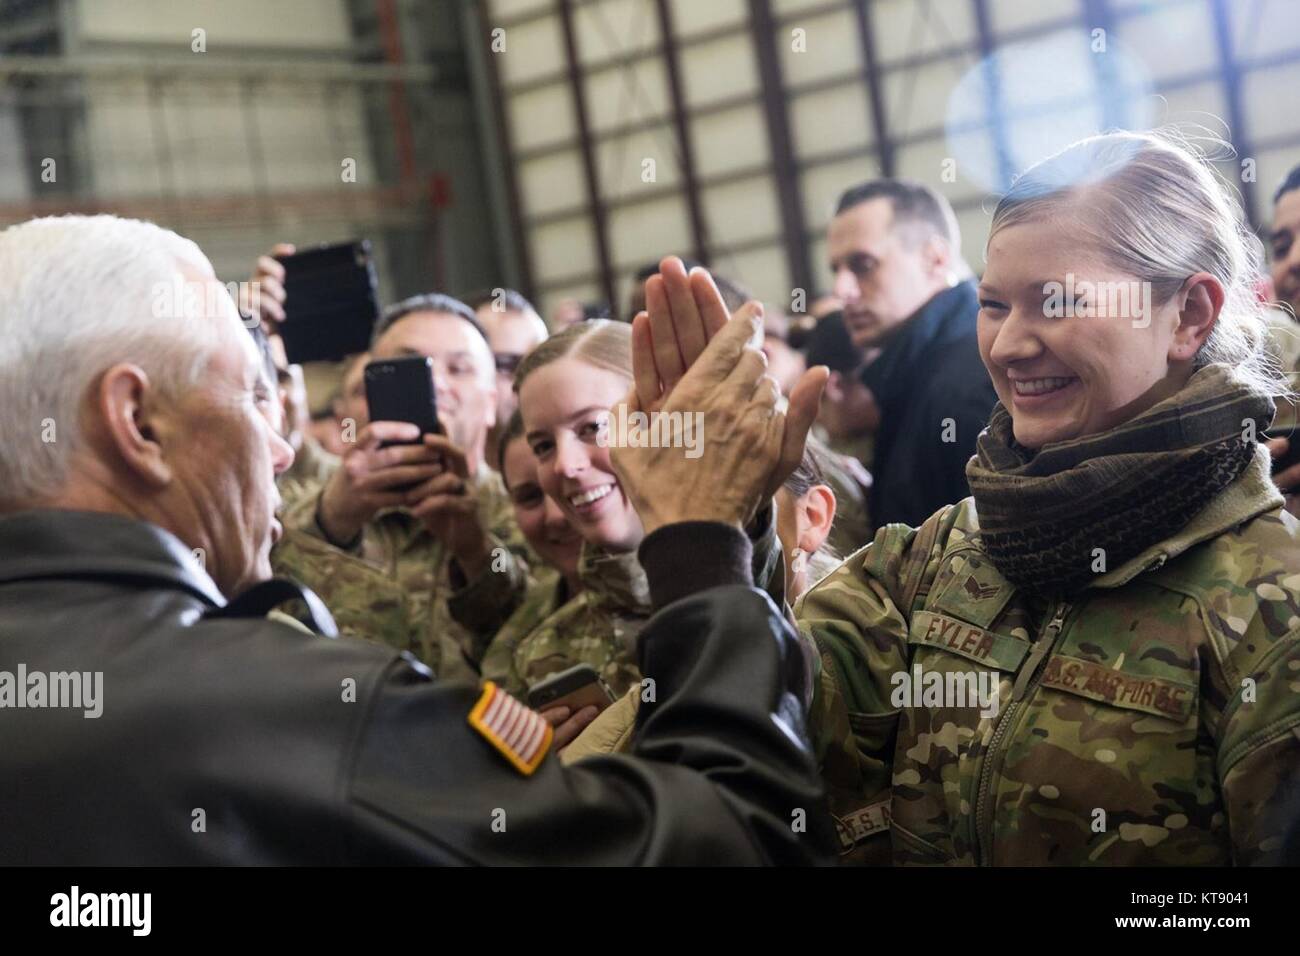 Le Vice-président américain Mike Pence service accueille les membres durant une visite de Noël à la base aérienne de Bagram, le 21 décembre 2017 à Bagram, en Afghanistan. Pence a montré son soutien pour le gouvernement afghan et a mis en garde le Pakistan voisin de cesser d'héberger des groupes militants. Banque D'Images